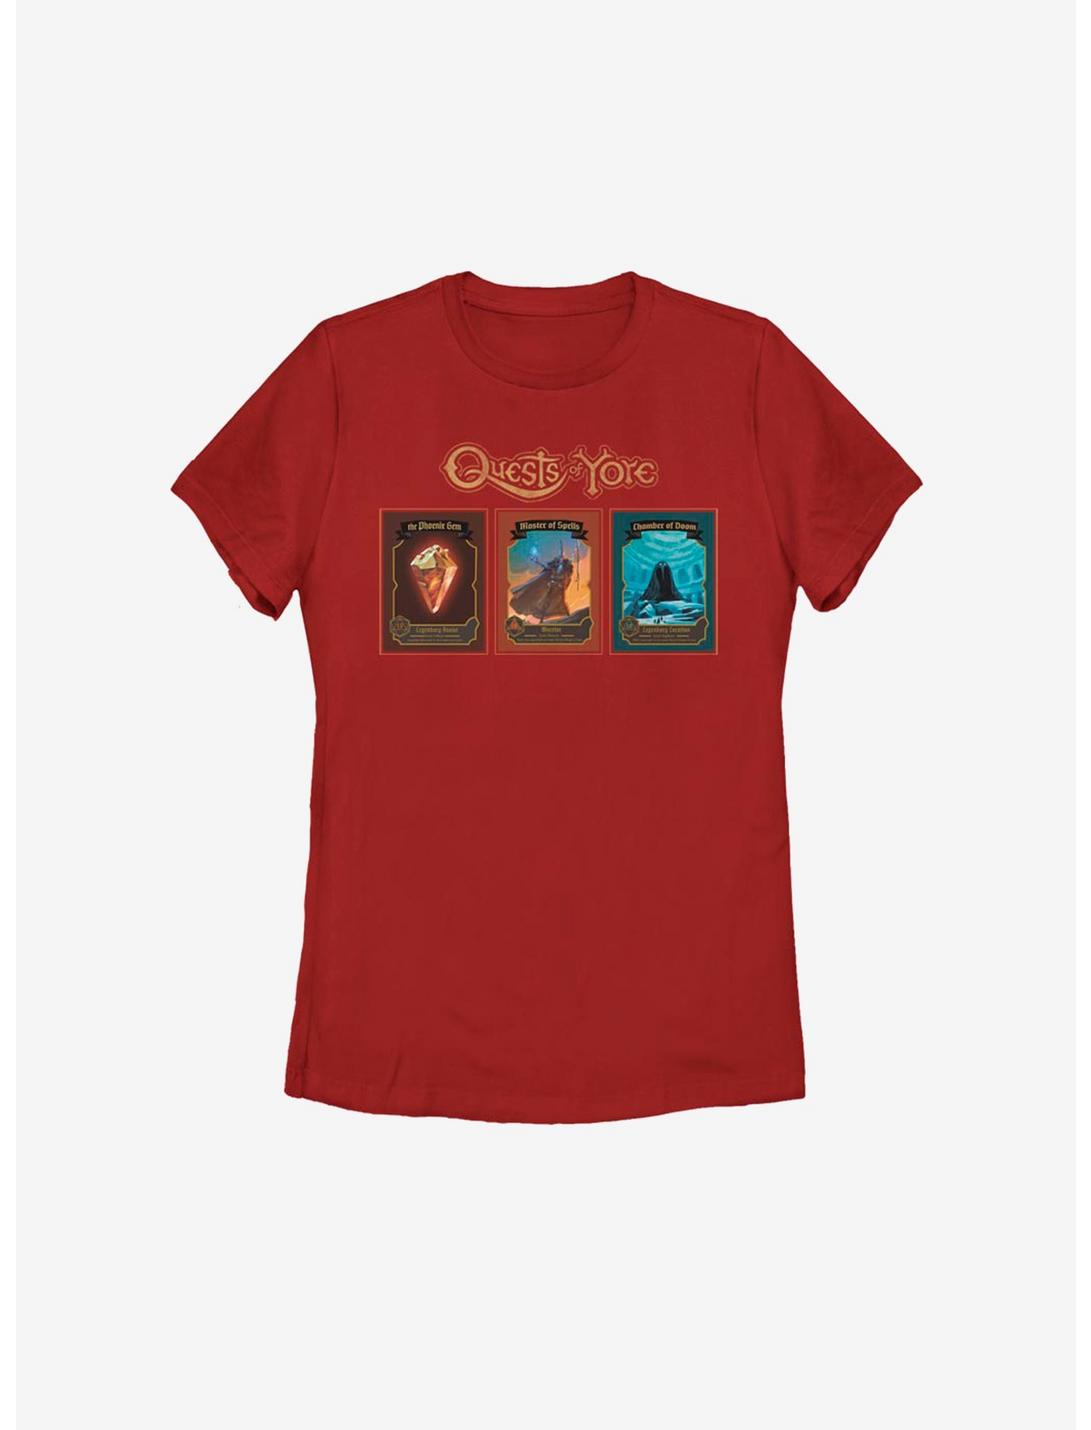 Disney Pixar Onward Quest Cards Womens T-Shirt, RED, hi-res